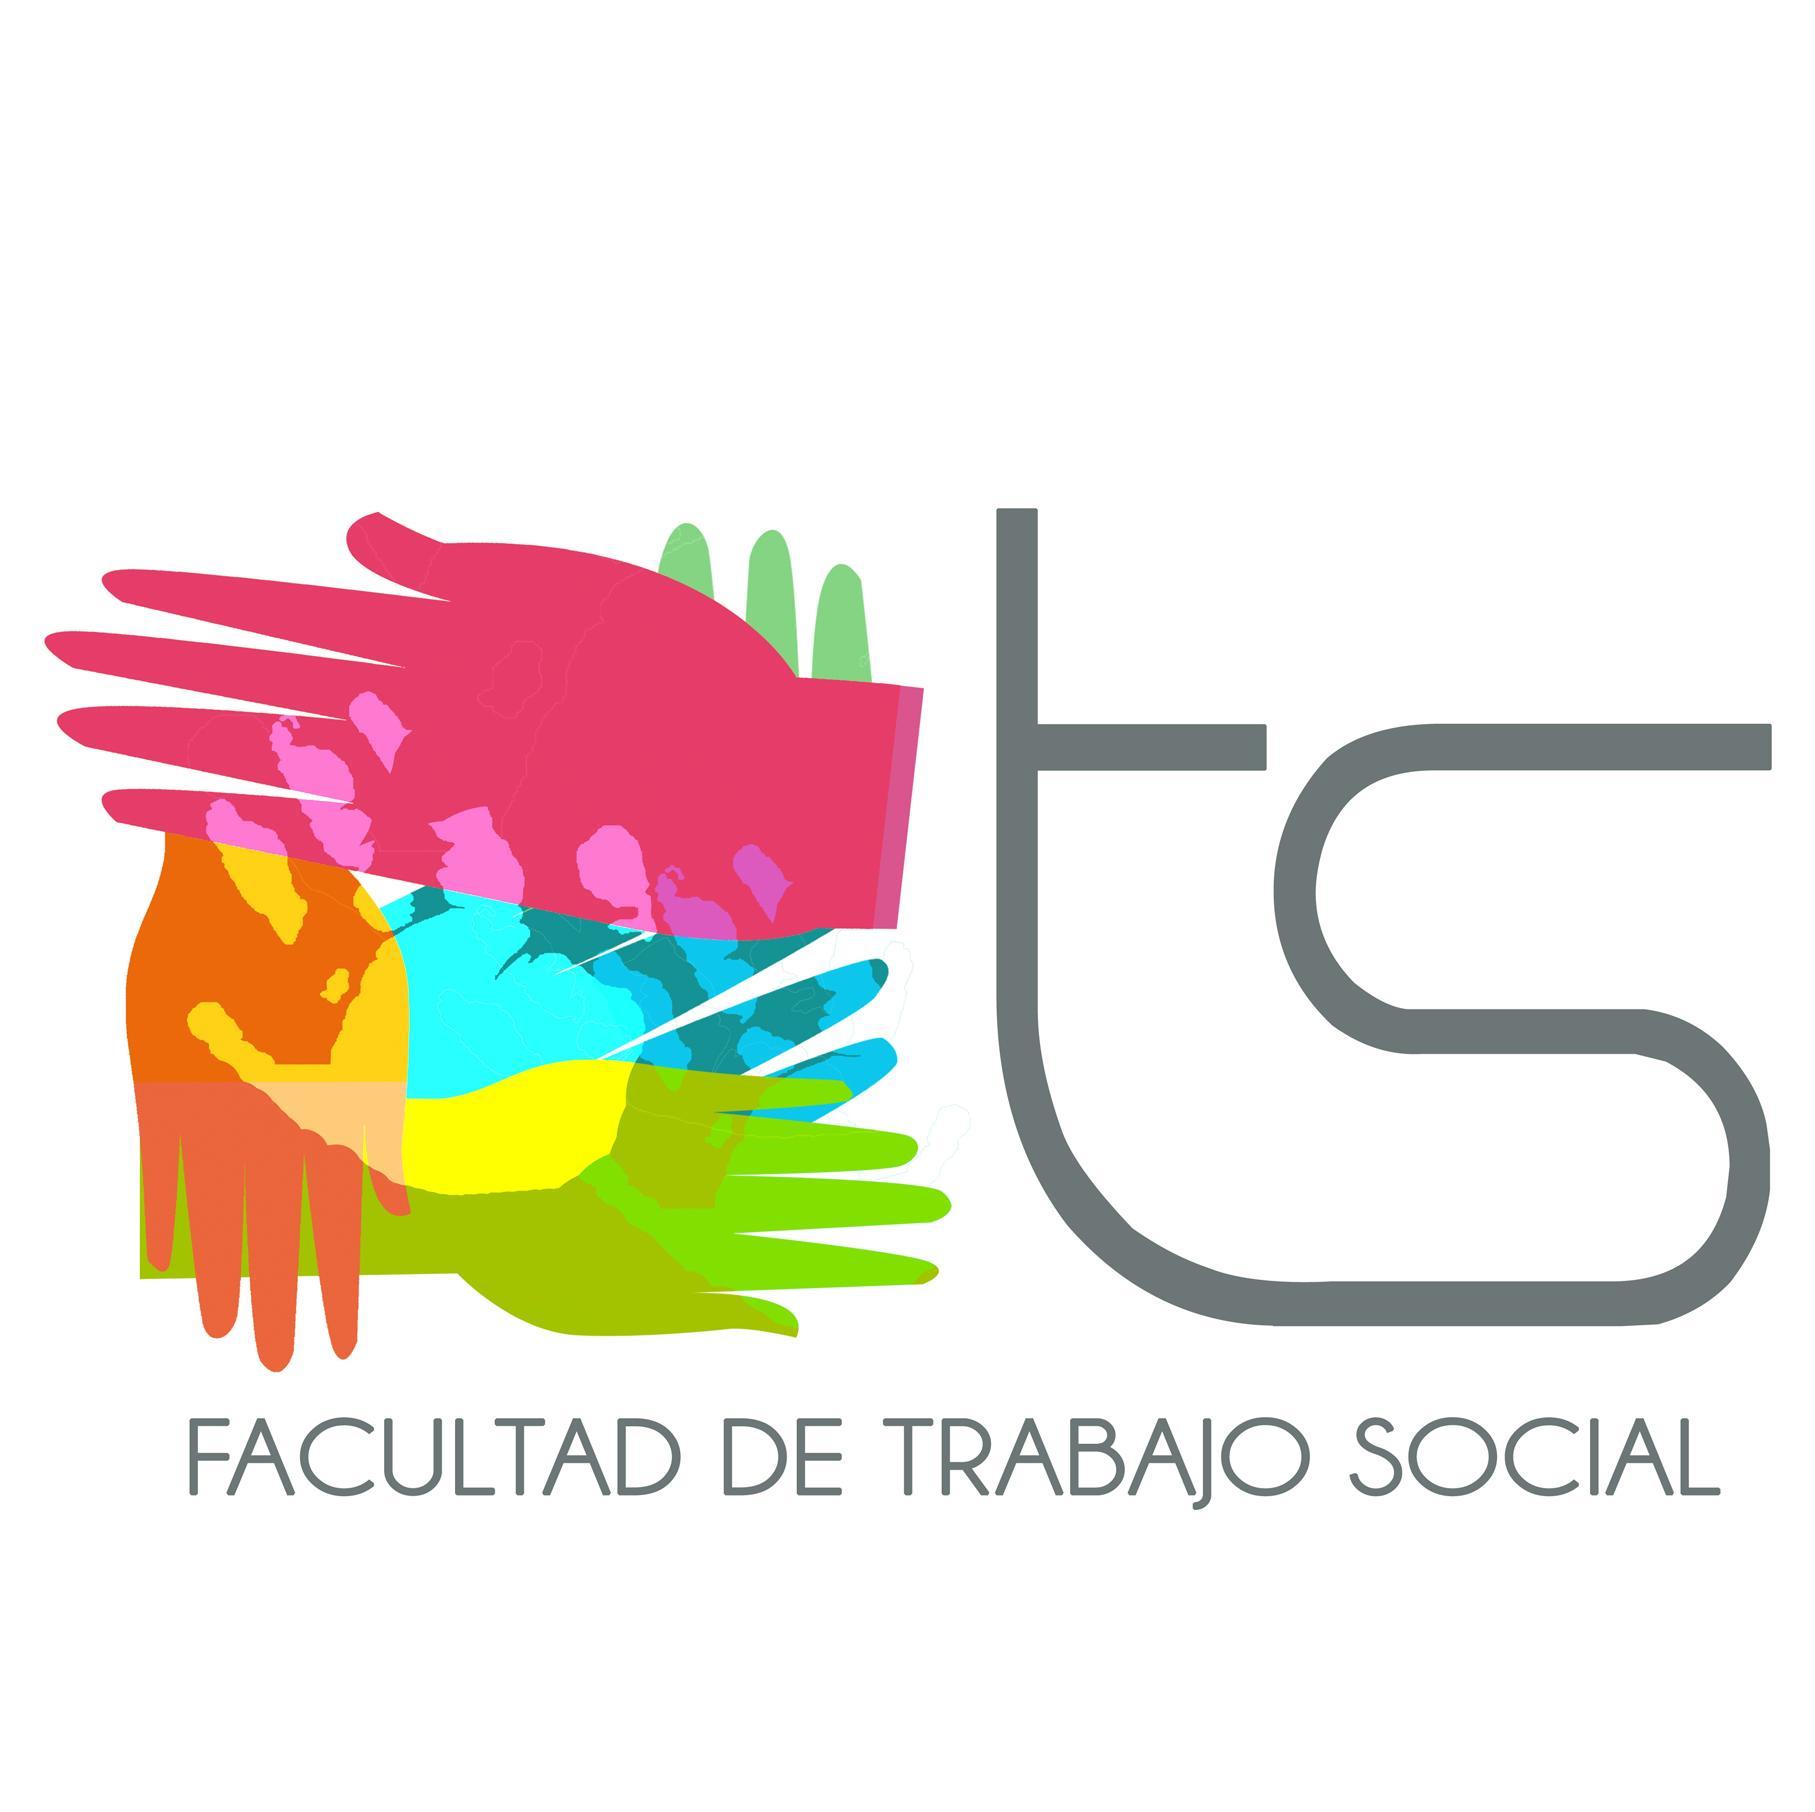 Facultad de Trabajo Social - Universiad de Murcia